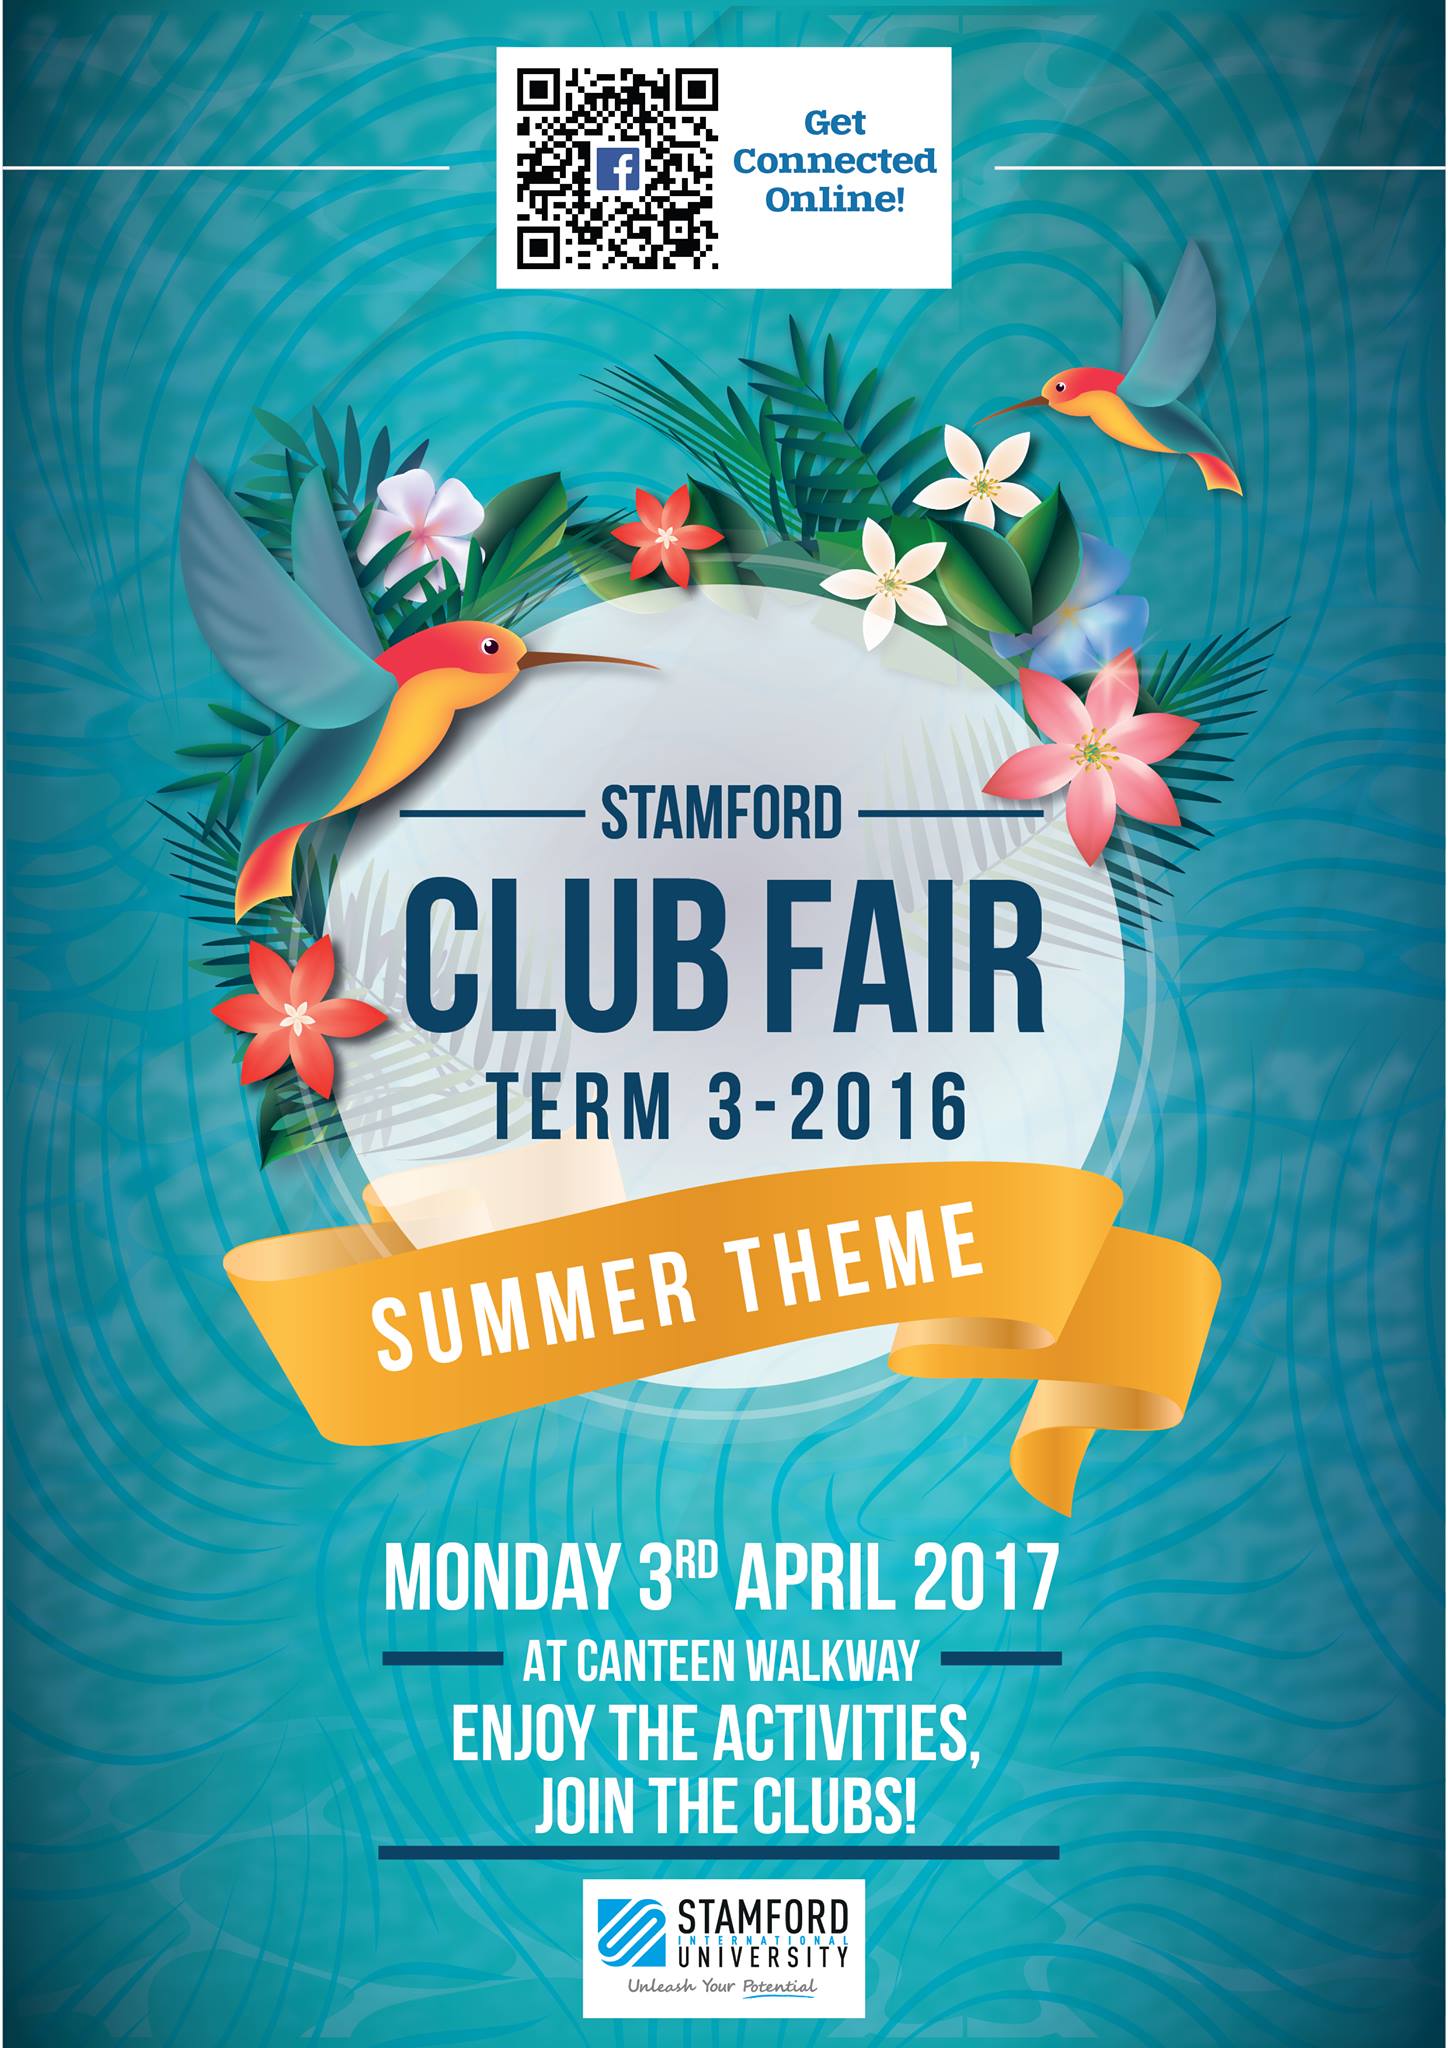 Stamford Club Fair Day Term 3-2016